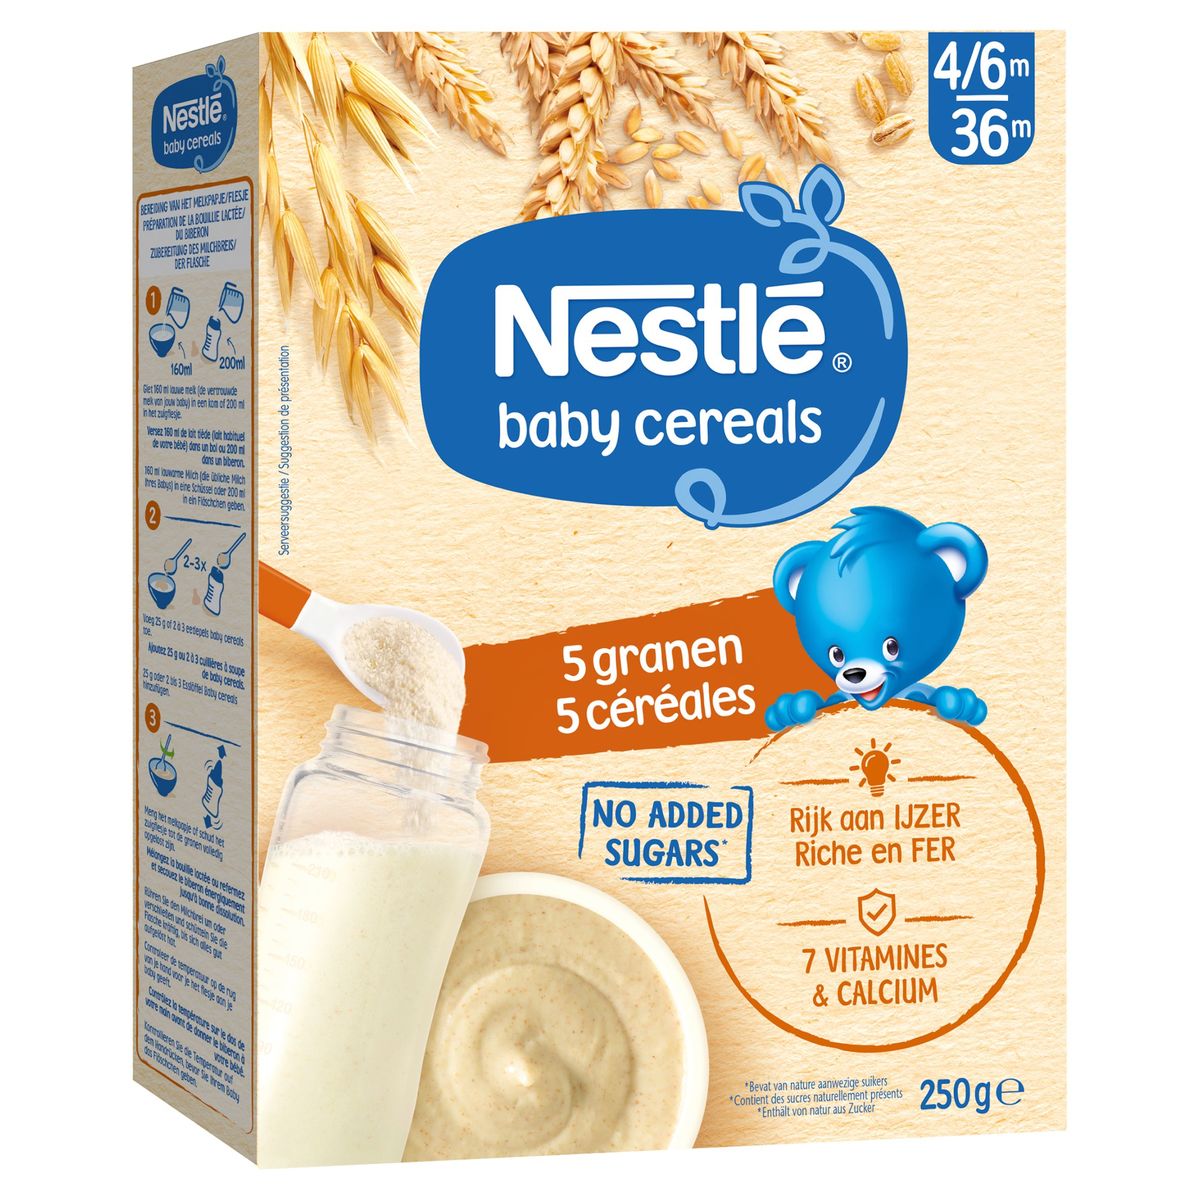 Nestlé Baby Cereals 5 Granen vanaf 6 maanden 250g